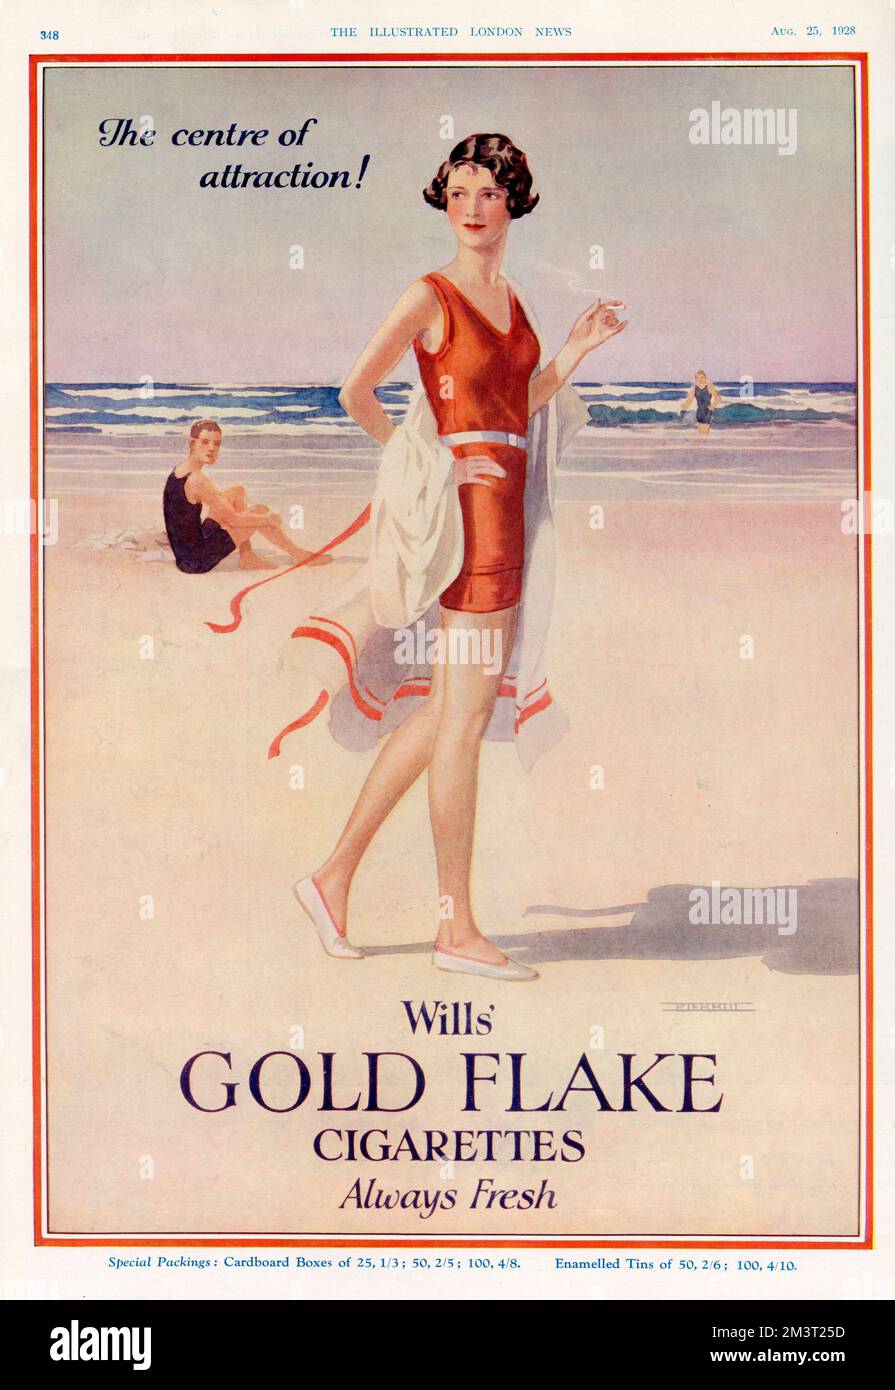 Publicité pour les cigarettes à paillettes dorées de Wills, avec une jeune femme glamour fumant une cigarette sur la plage dans un maillot de bain rouge, qui est le centre d'attraction! Banque D'Images